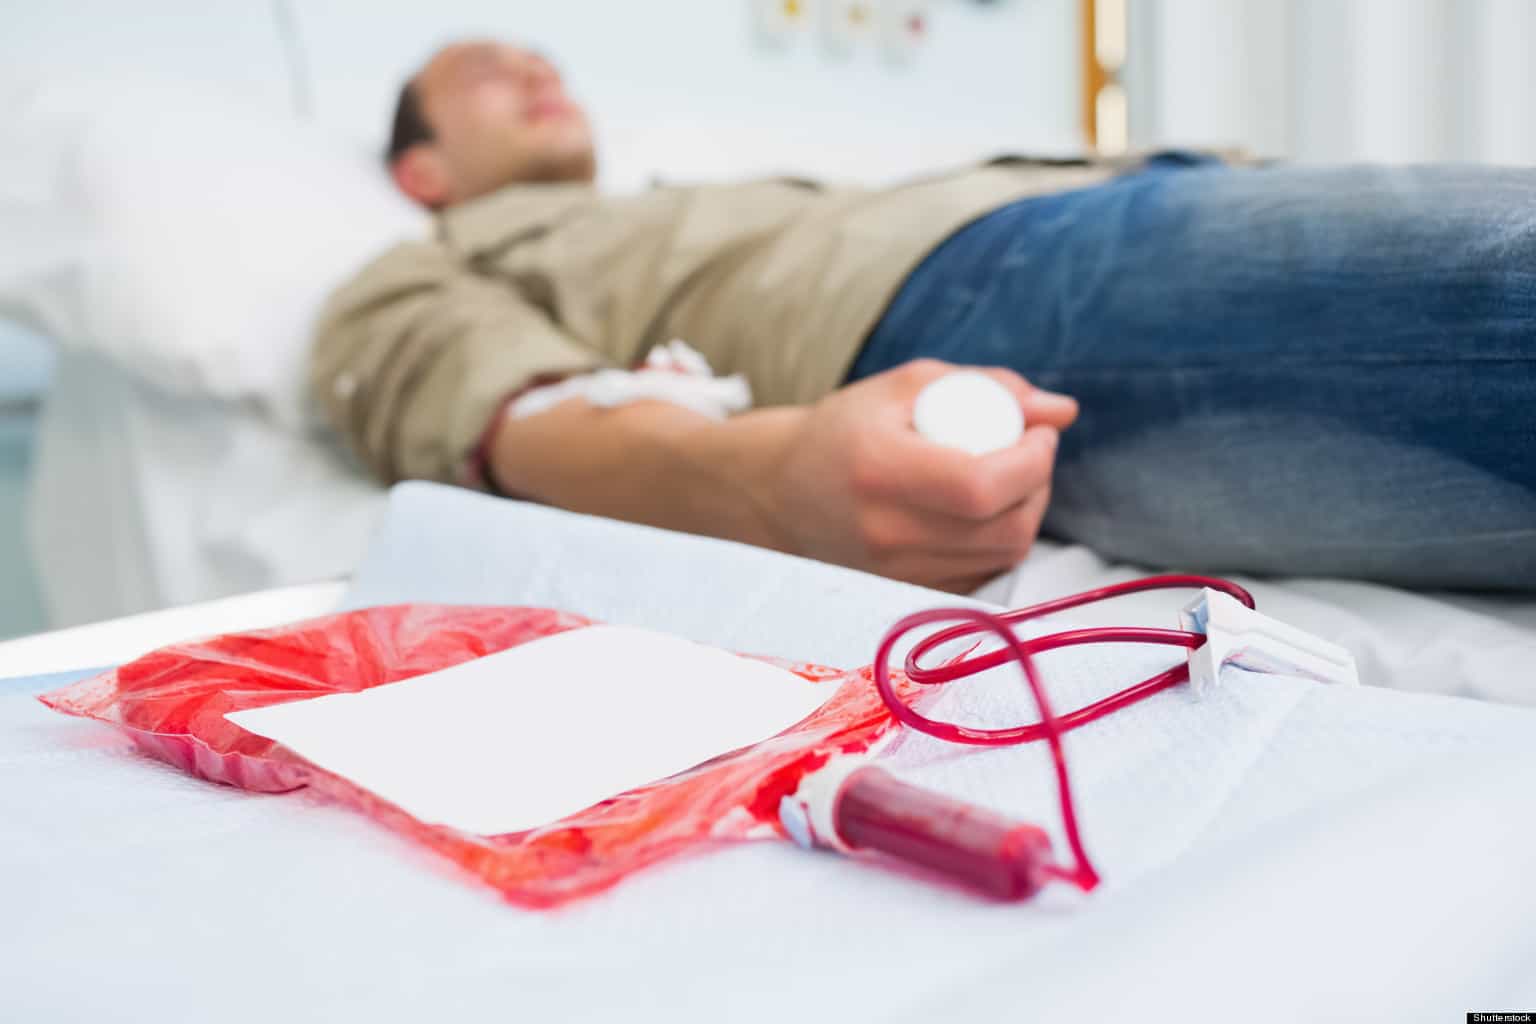 혈액이 두꺼운 사람은 헌혈을 권장하지 않는 이유가 있습니다.